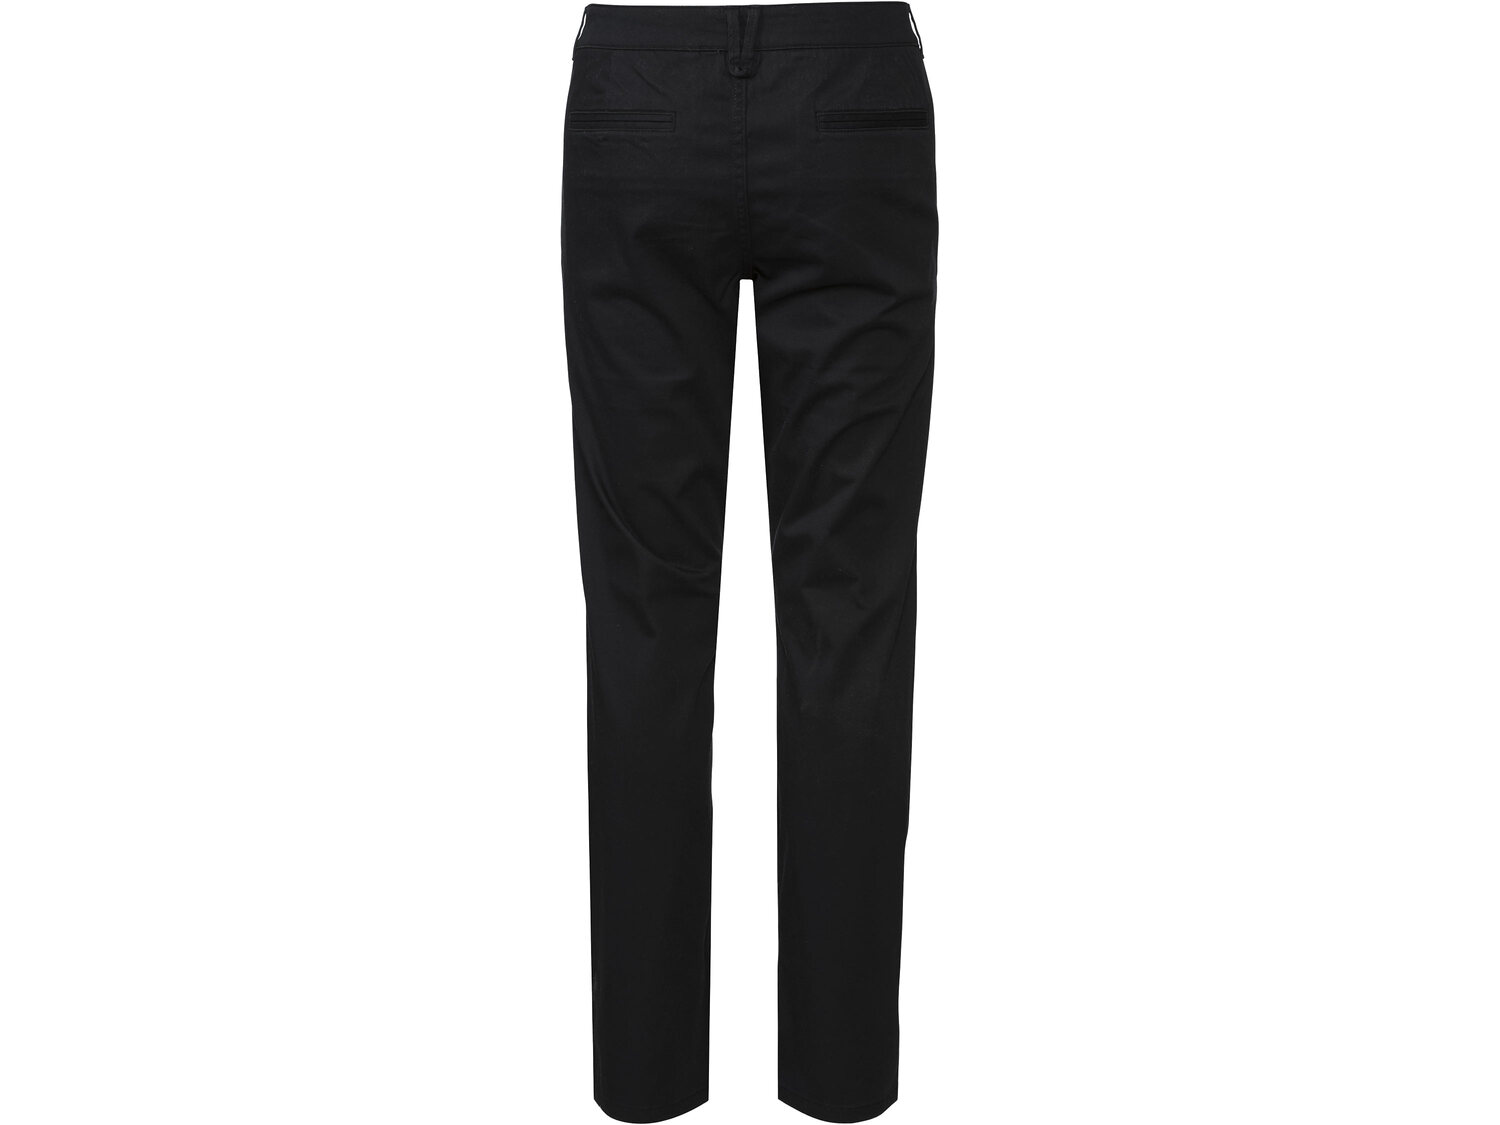 Spodnie Livergy, cena 44,99 PLN 
- wąski kr&oacute;j
- rozmiary: 46-56
Dostępne ...